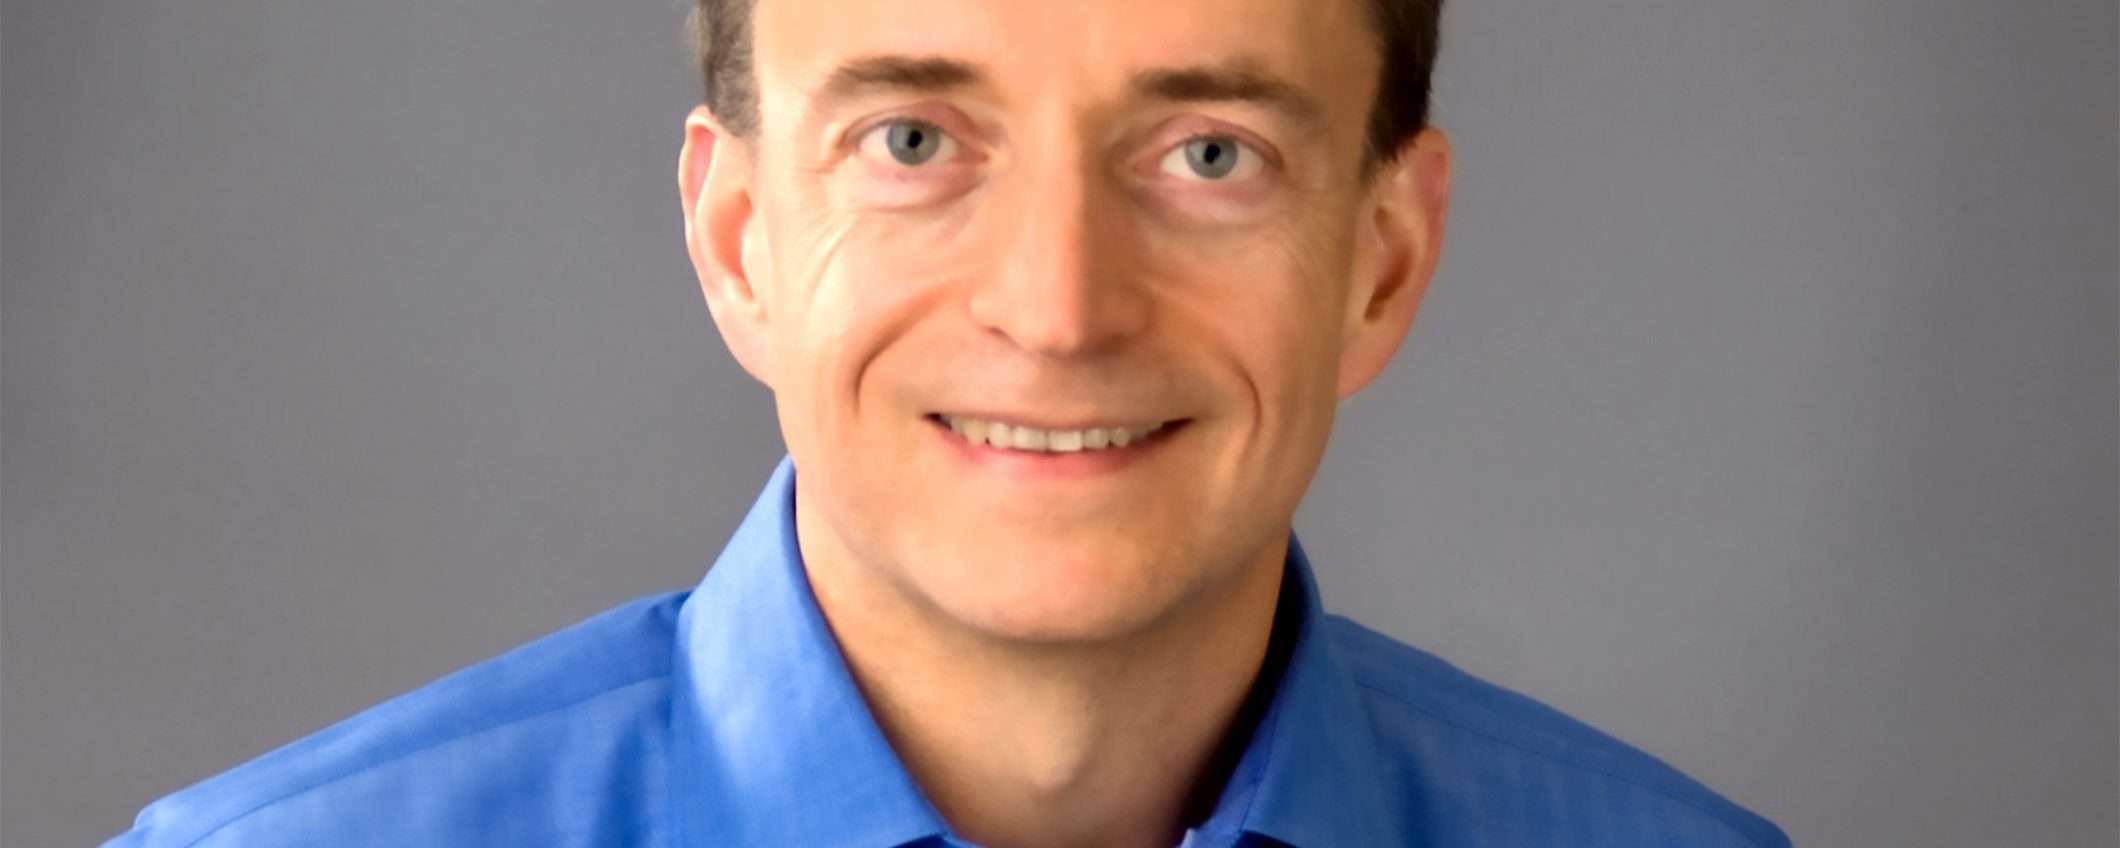 Pat Gelsinger diventa il nuovo CEO di Intel